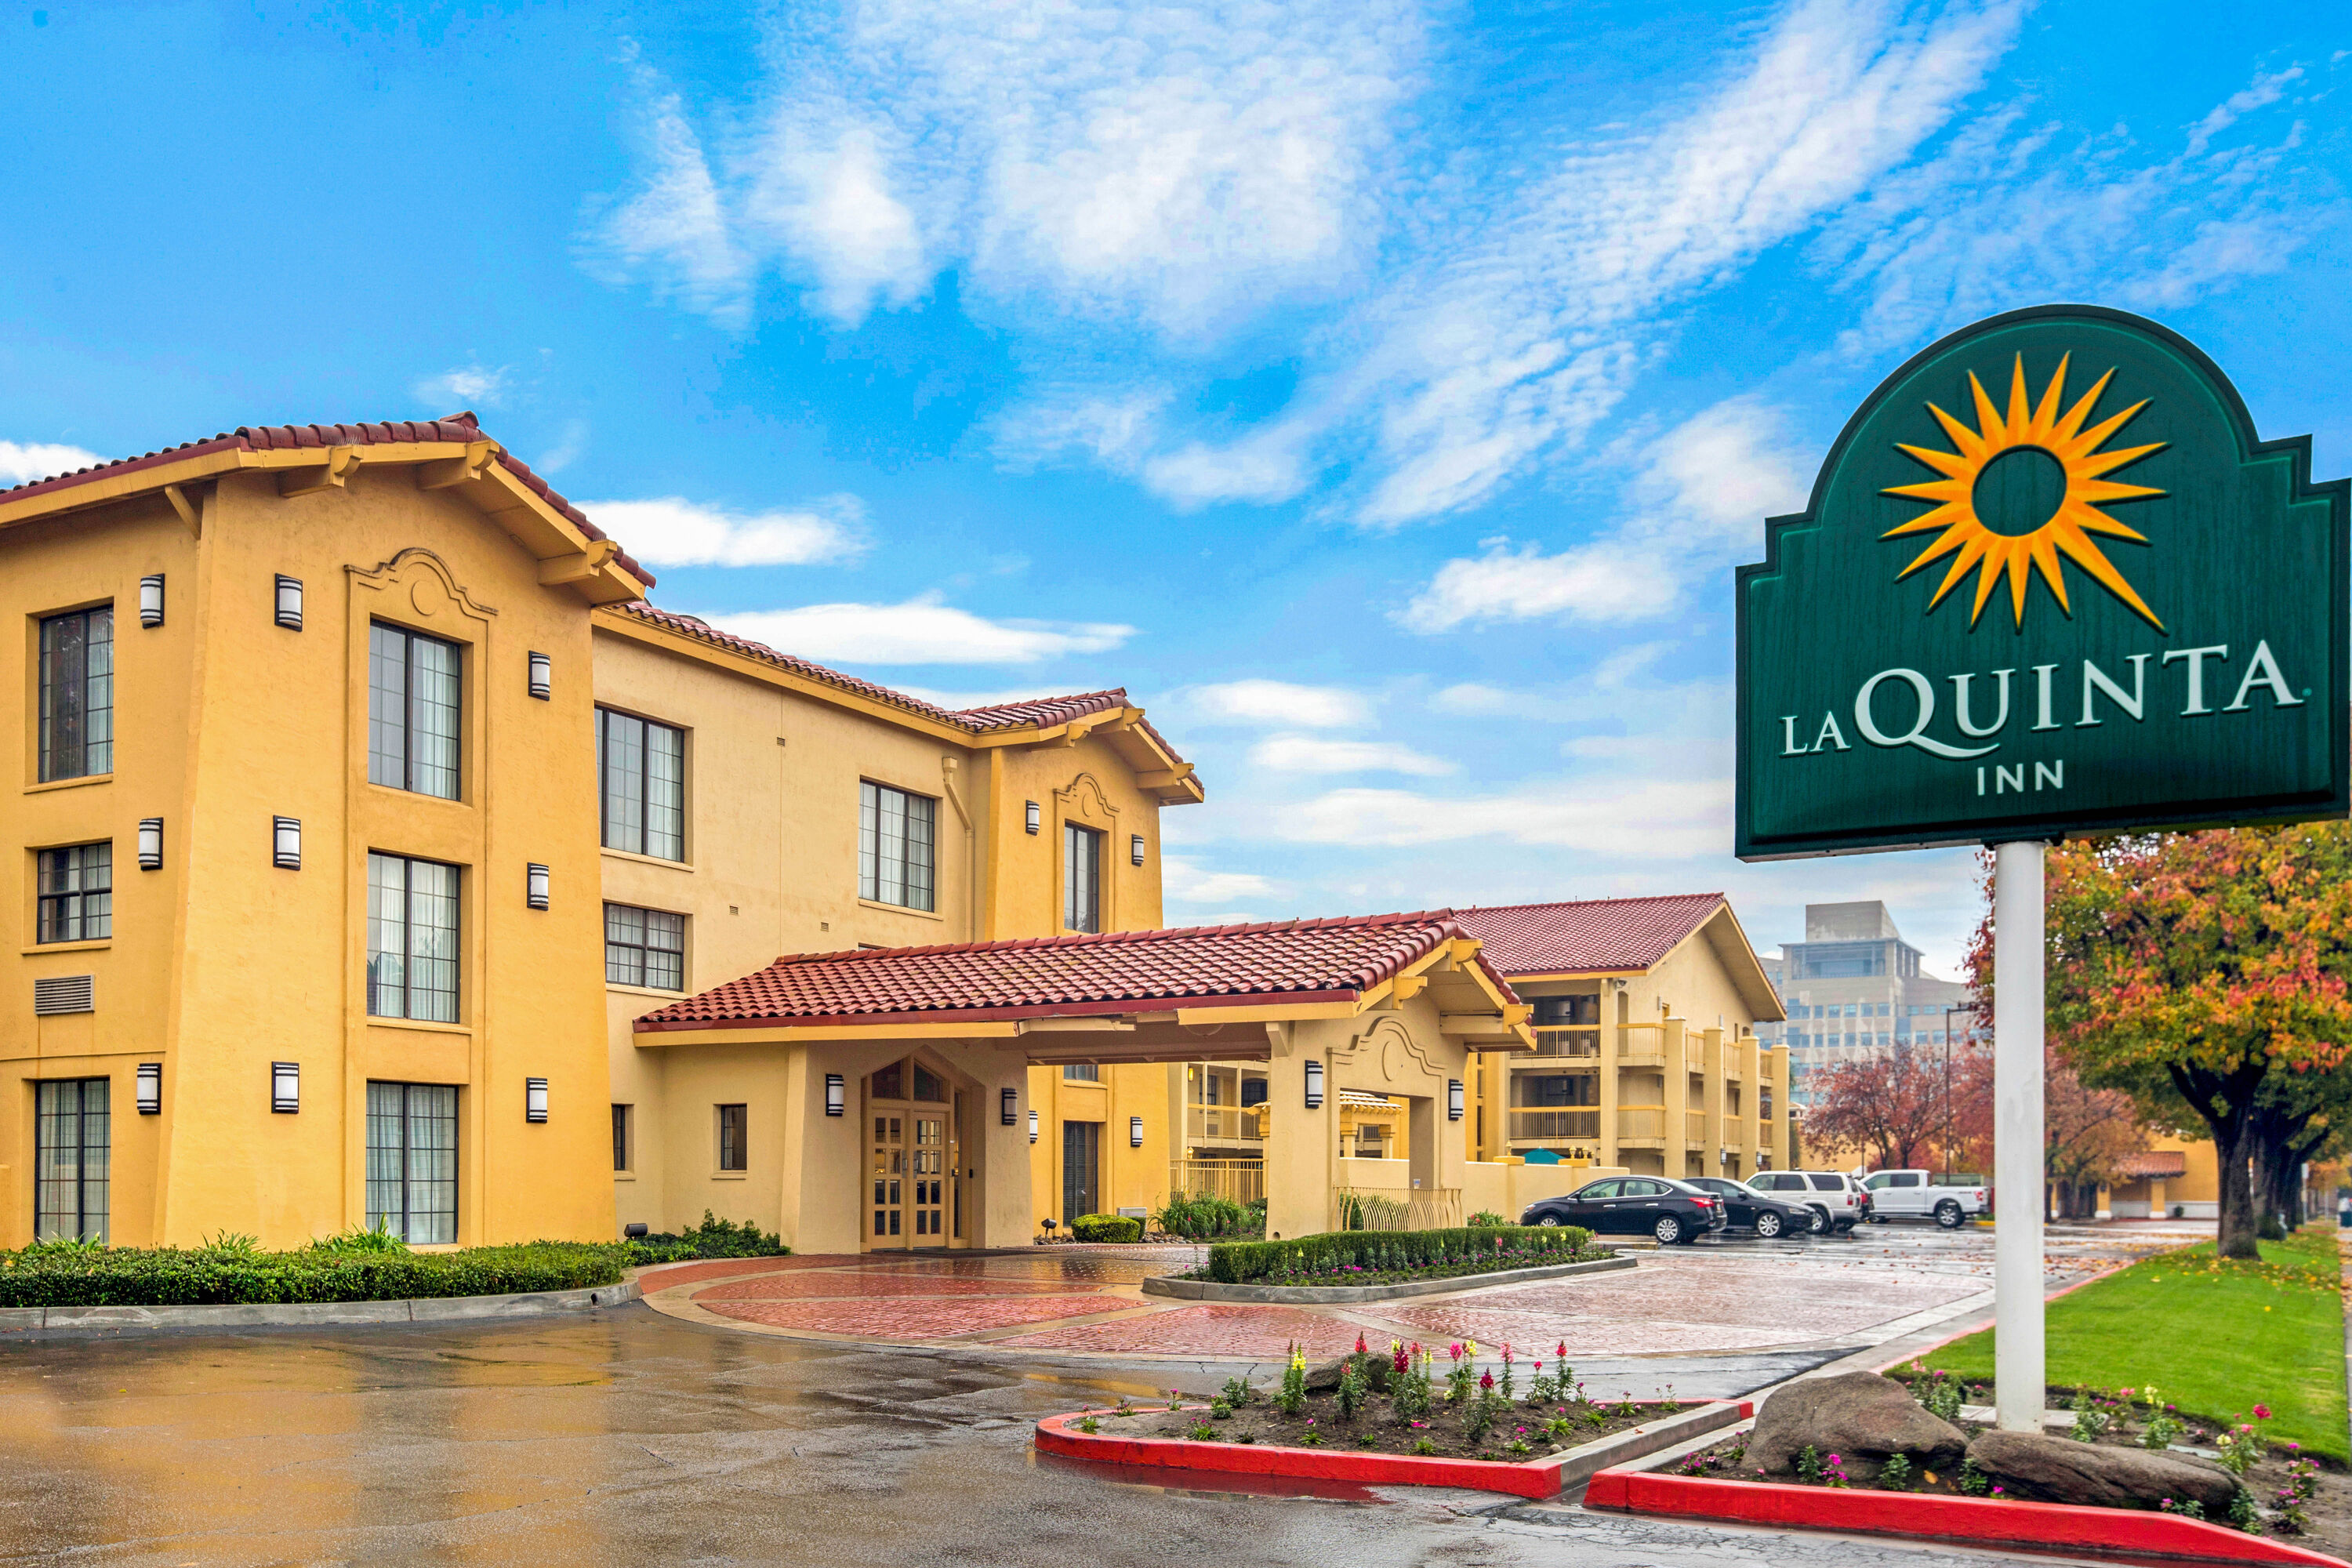 La Quinta Inn by Wyndham Fresno Yosemite Fresno, CA Hotels